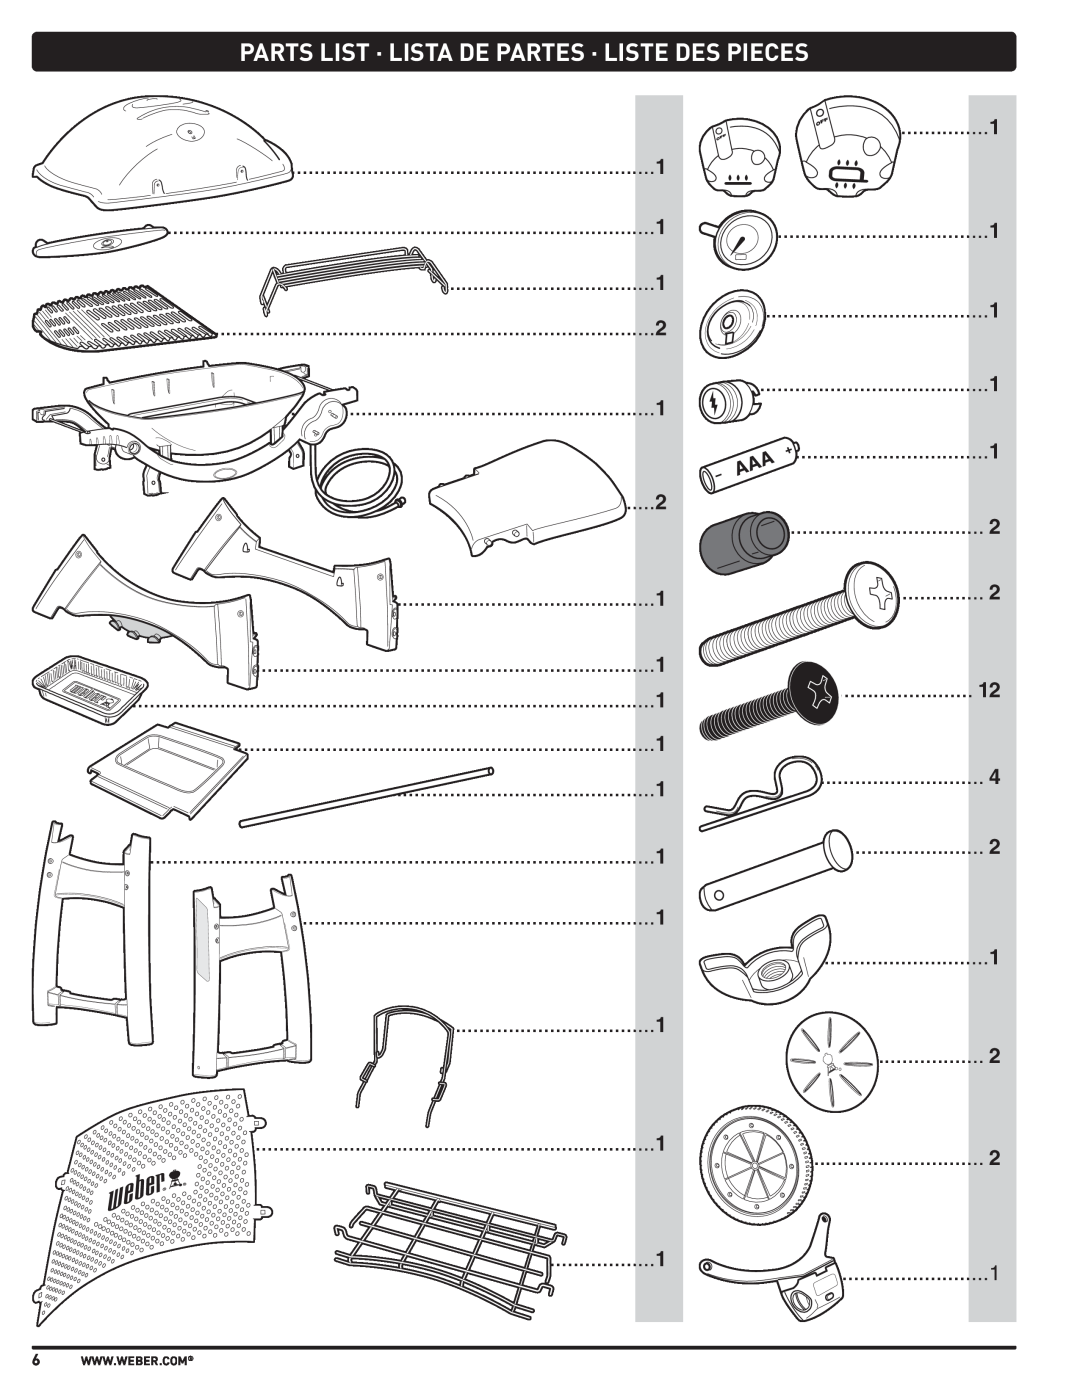 Weber 57515 manual Parts List · Lista De Partes · Liste Des Pieces 